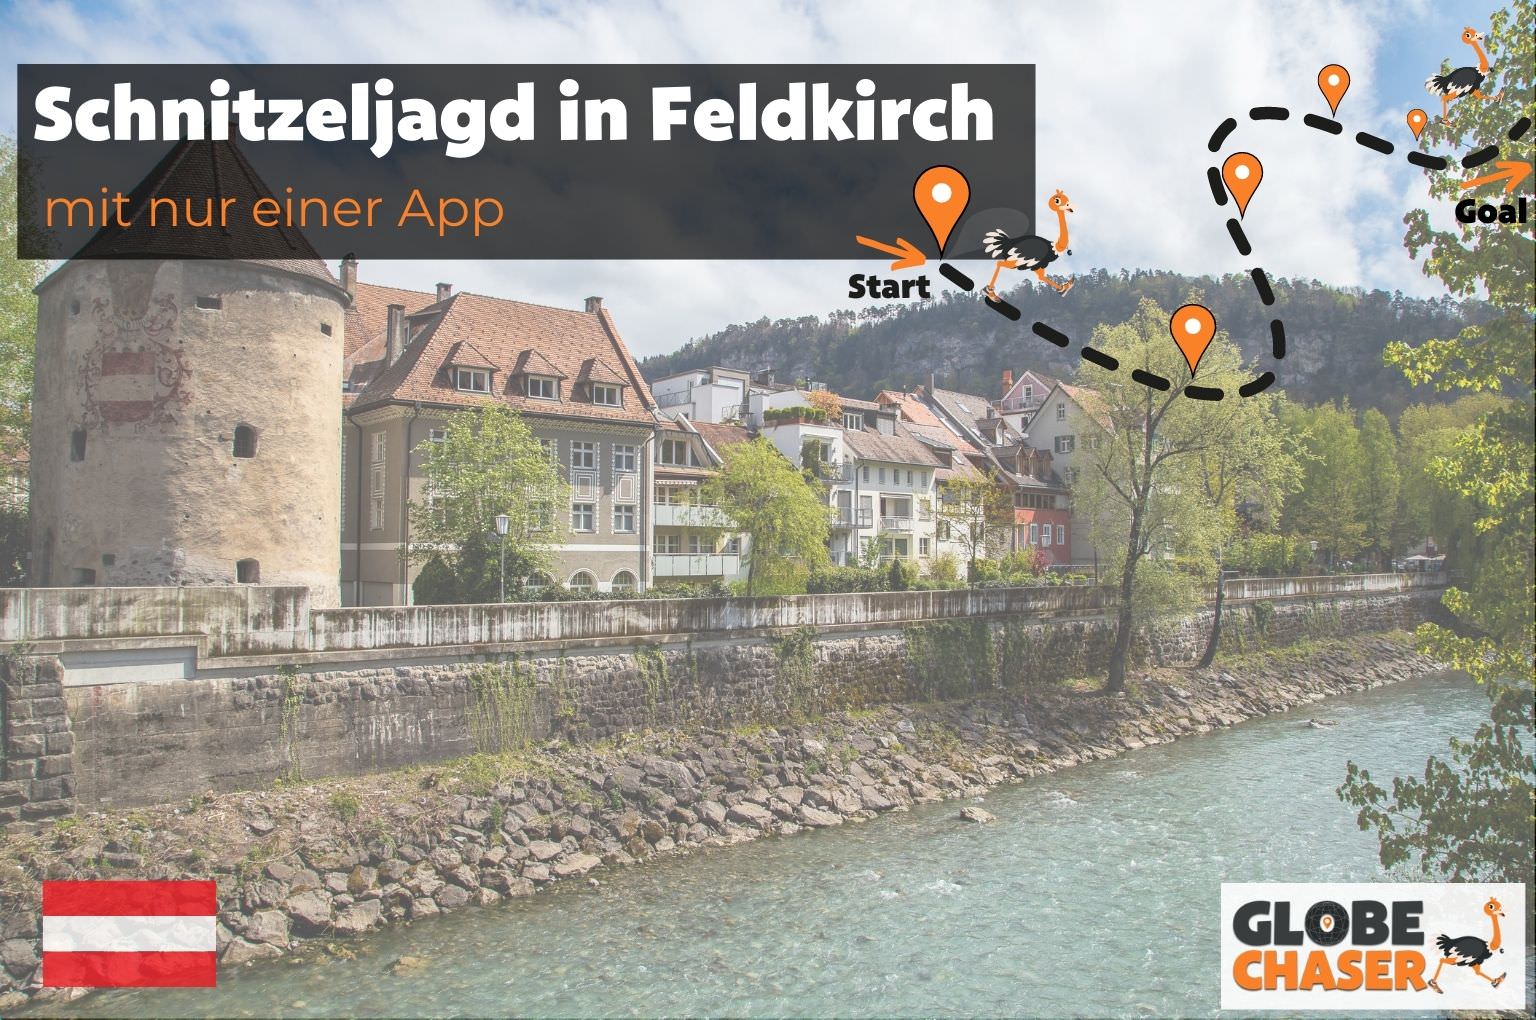 Schnitzeljagd in Feldkirch mit App - Globe Chaser Erlebnisse Austria